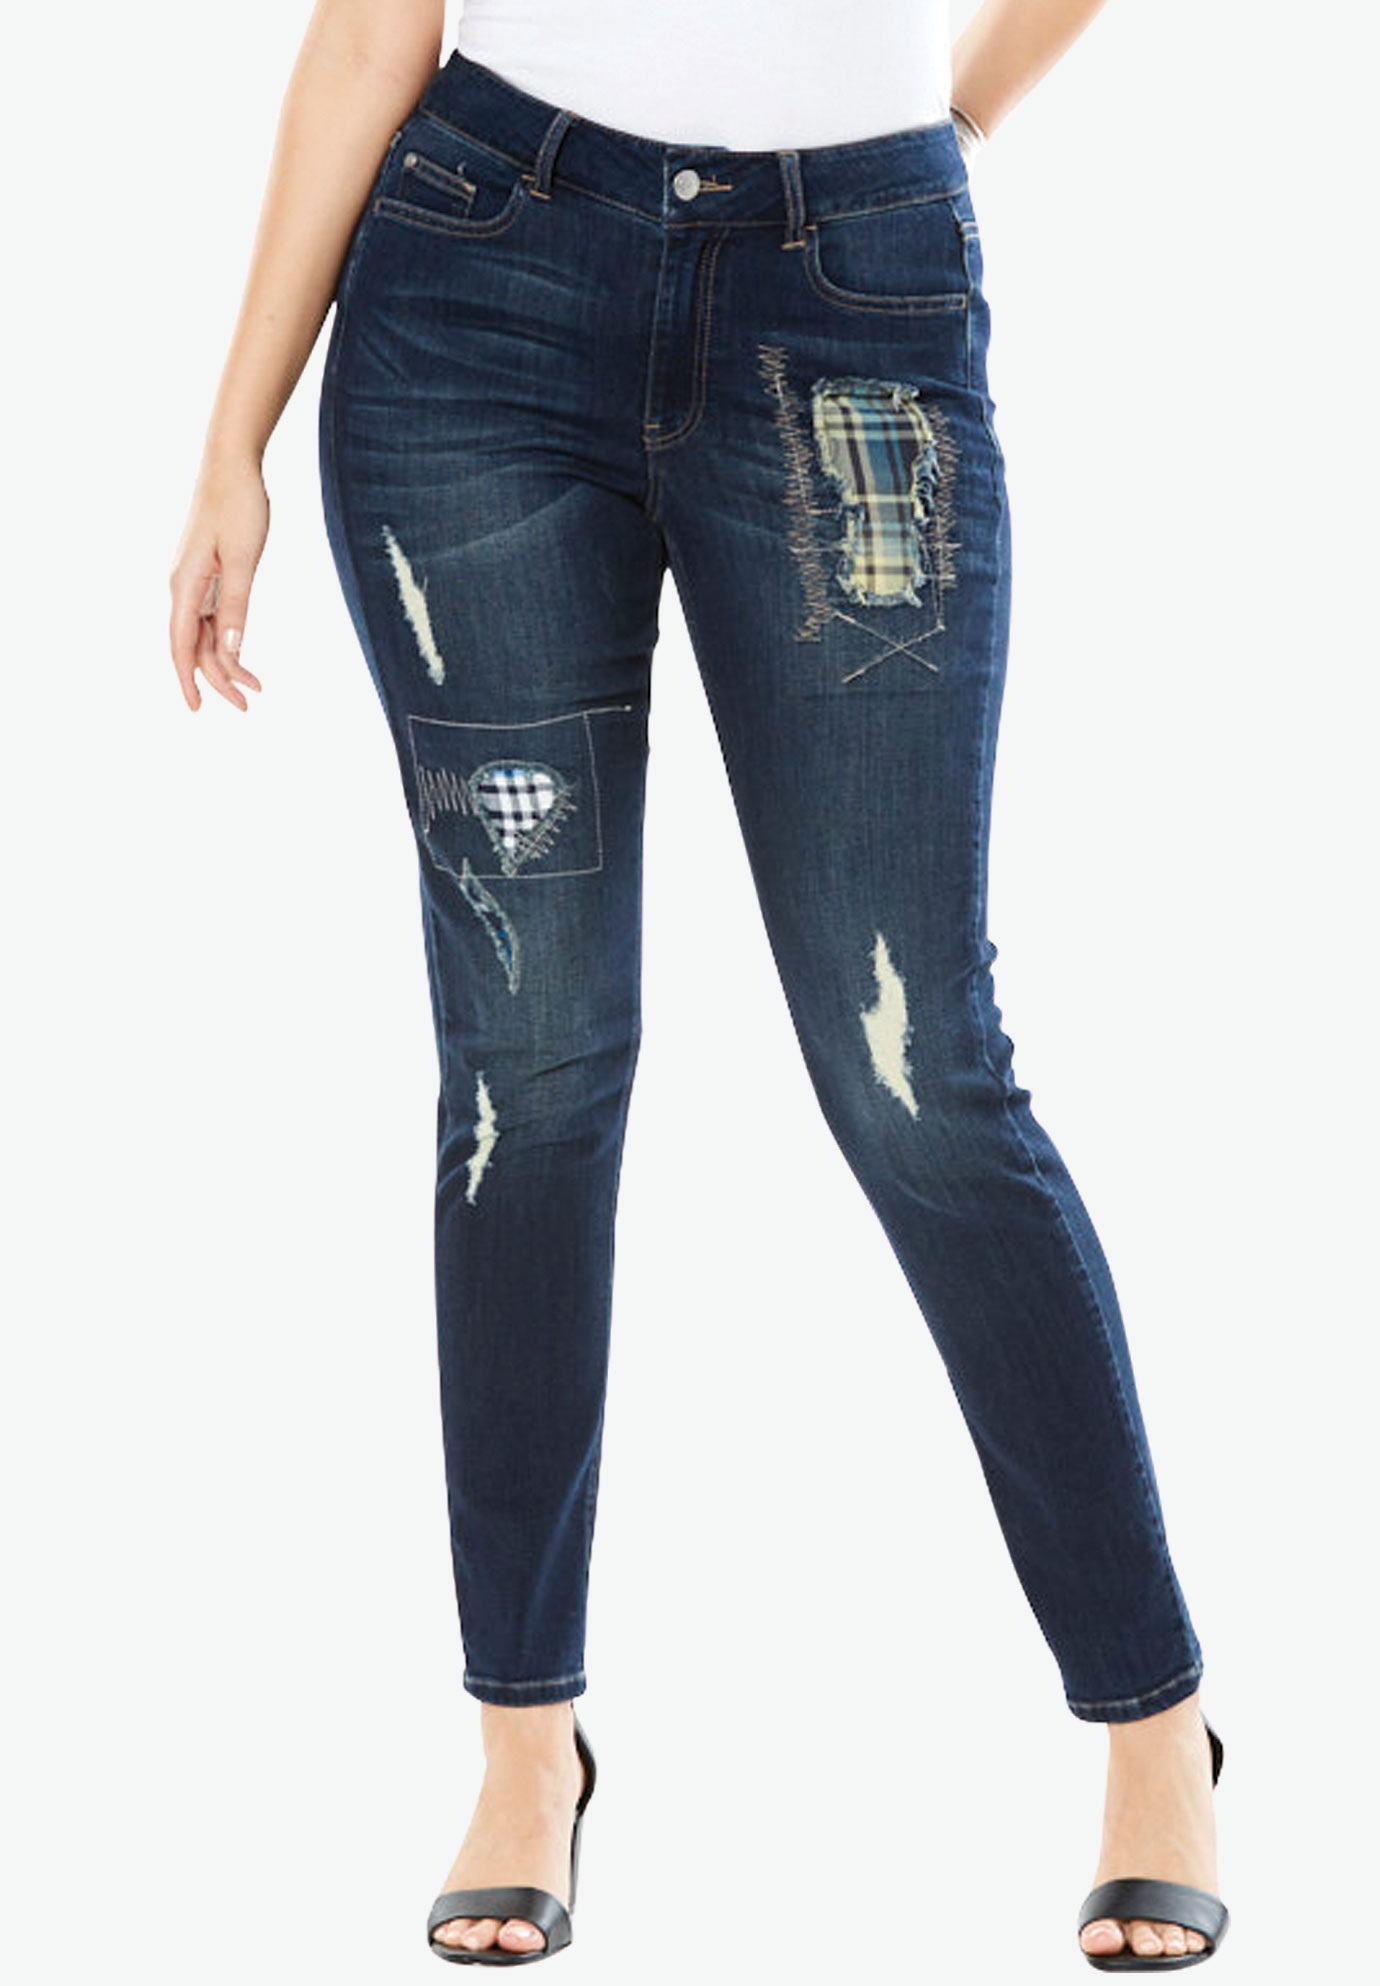 Plaid Patchwork Jeans by Denim 24/7 | Plus Size Jeans and Pants | Roaman's